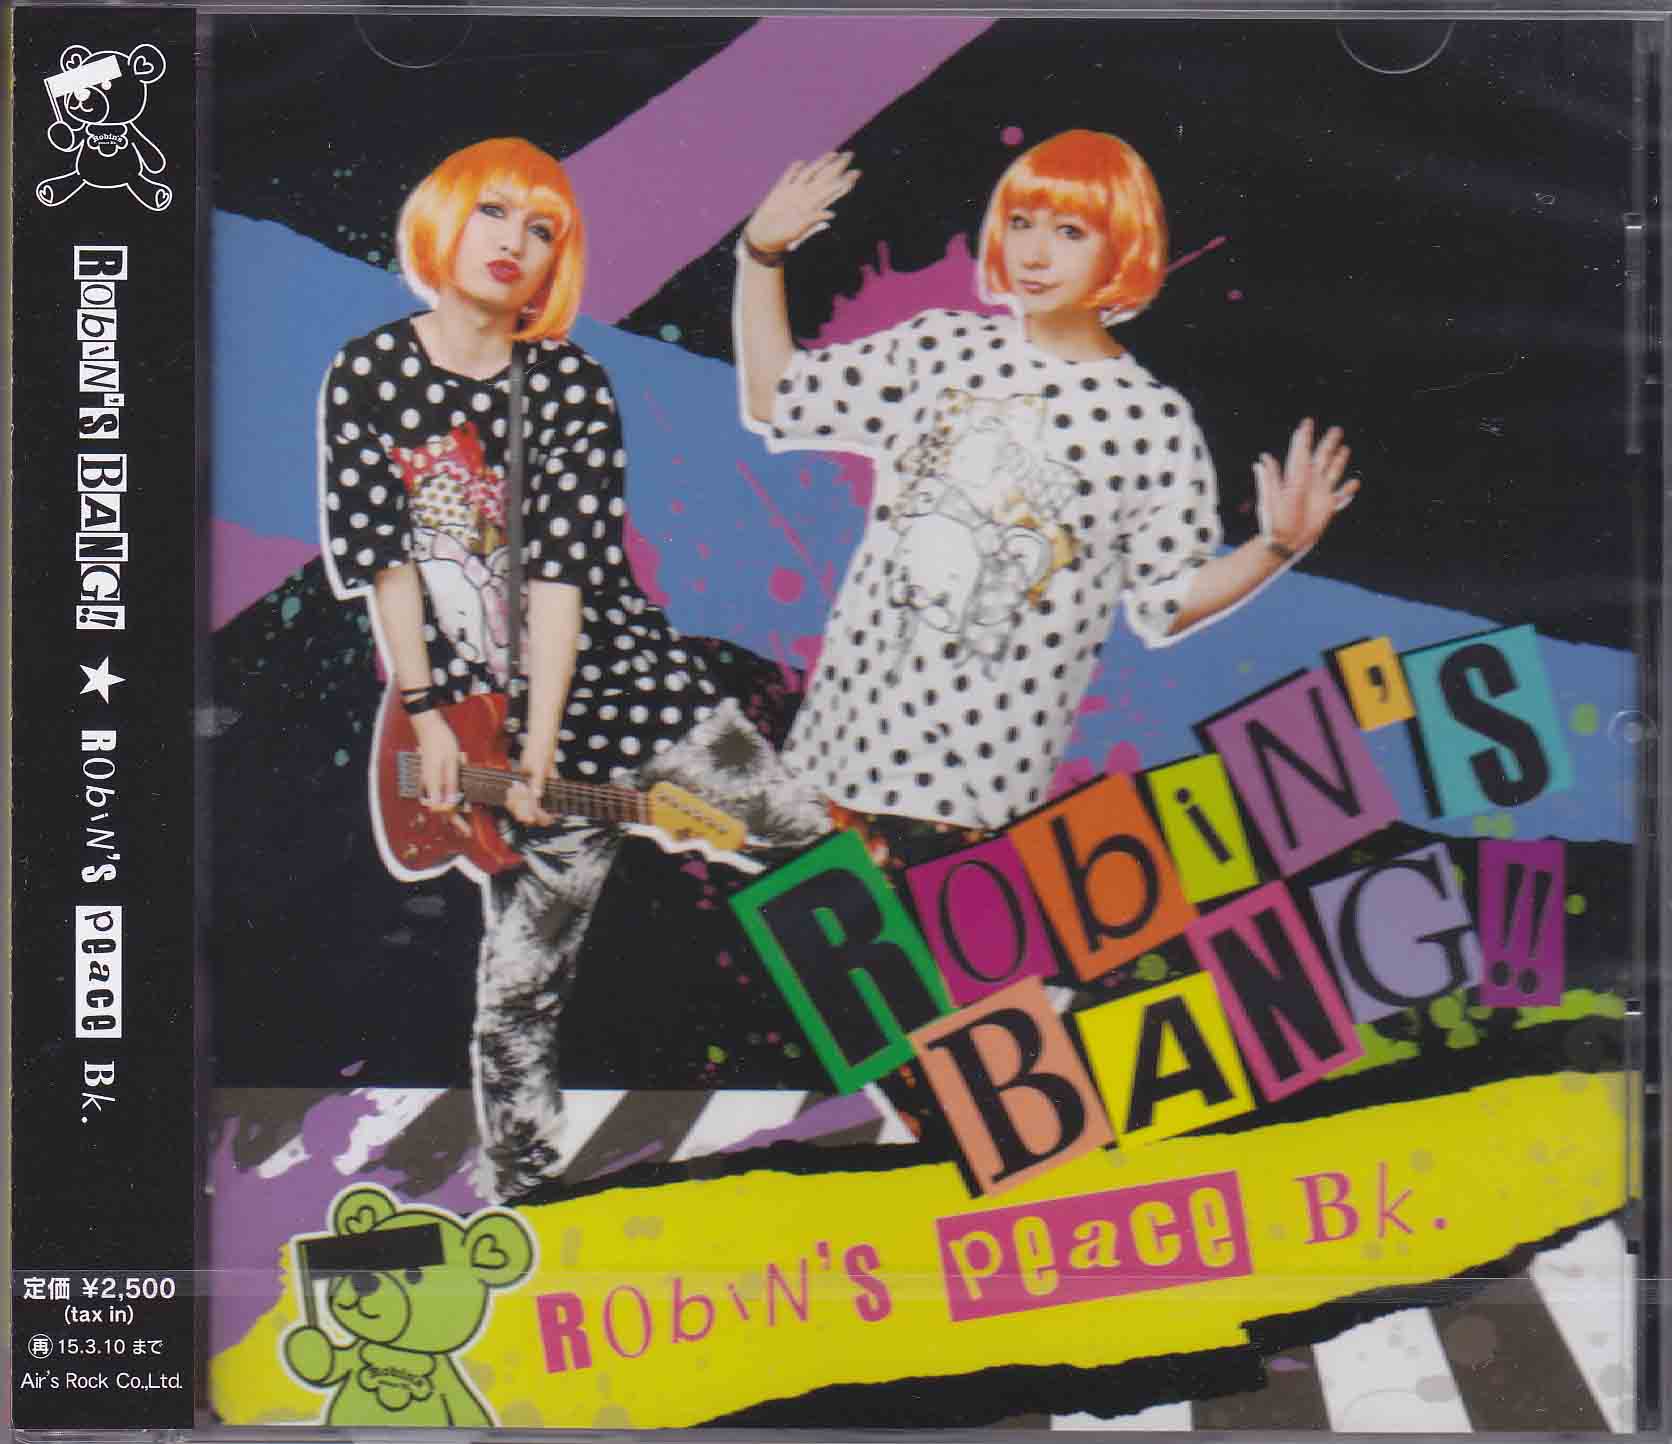 Robin's peace Bk. ( ロビンズピースビーケー )  の CD Robin’s BANG!!【B-type】